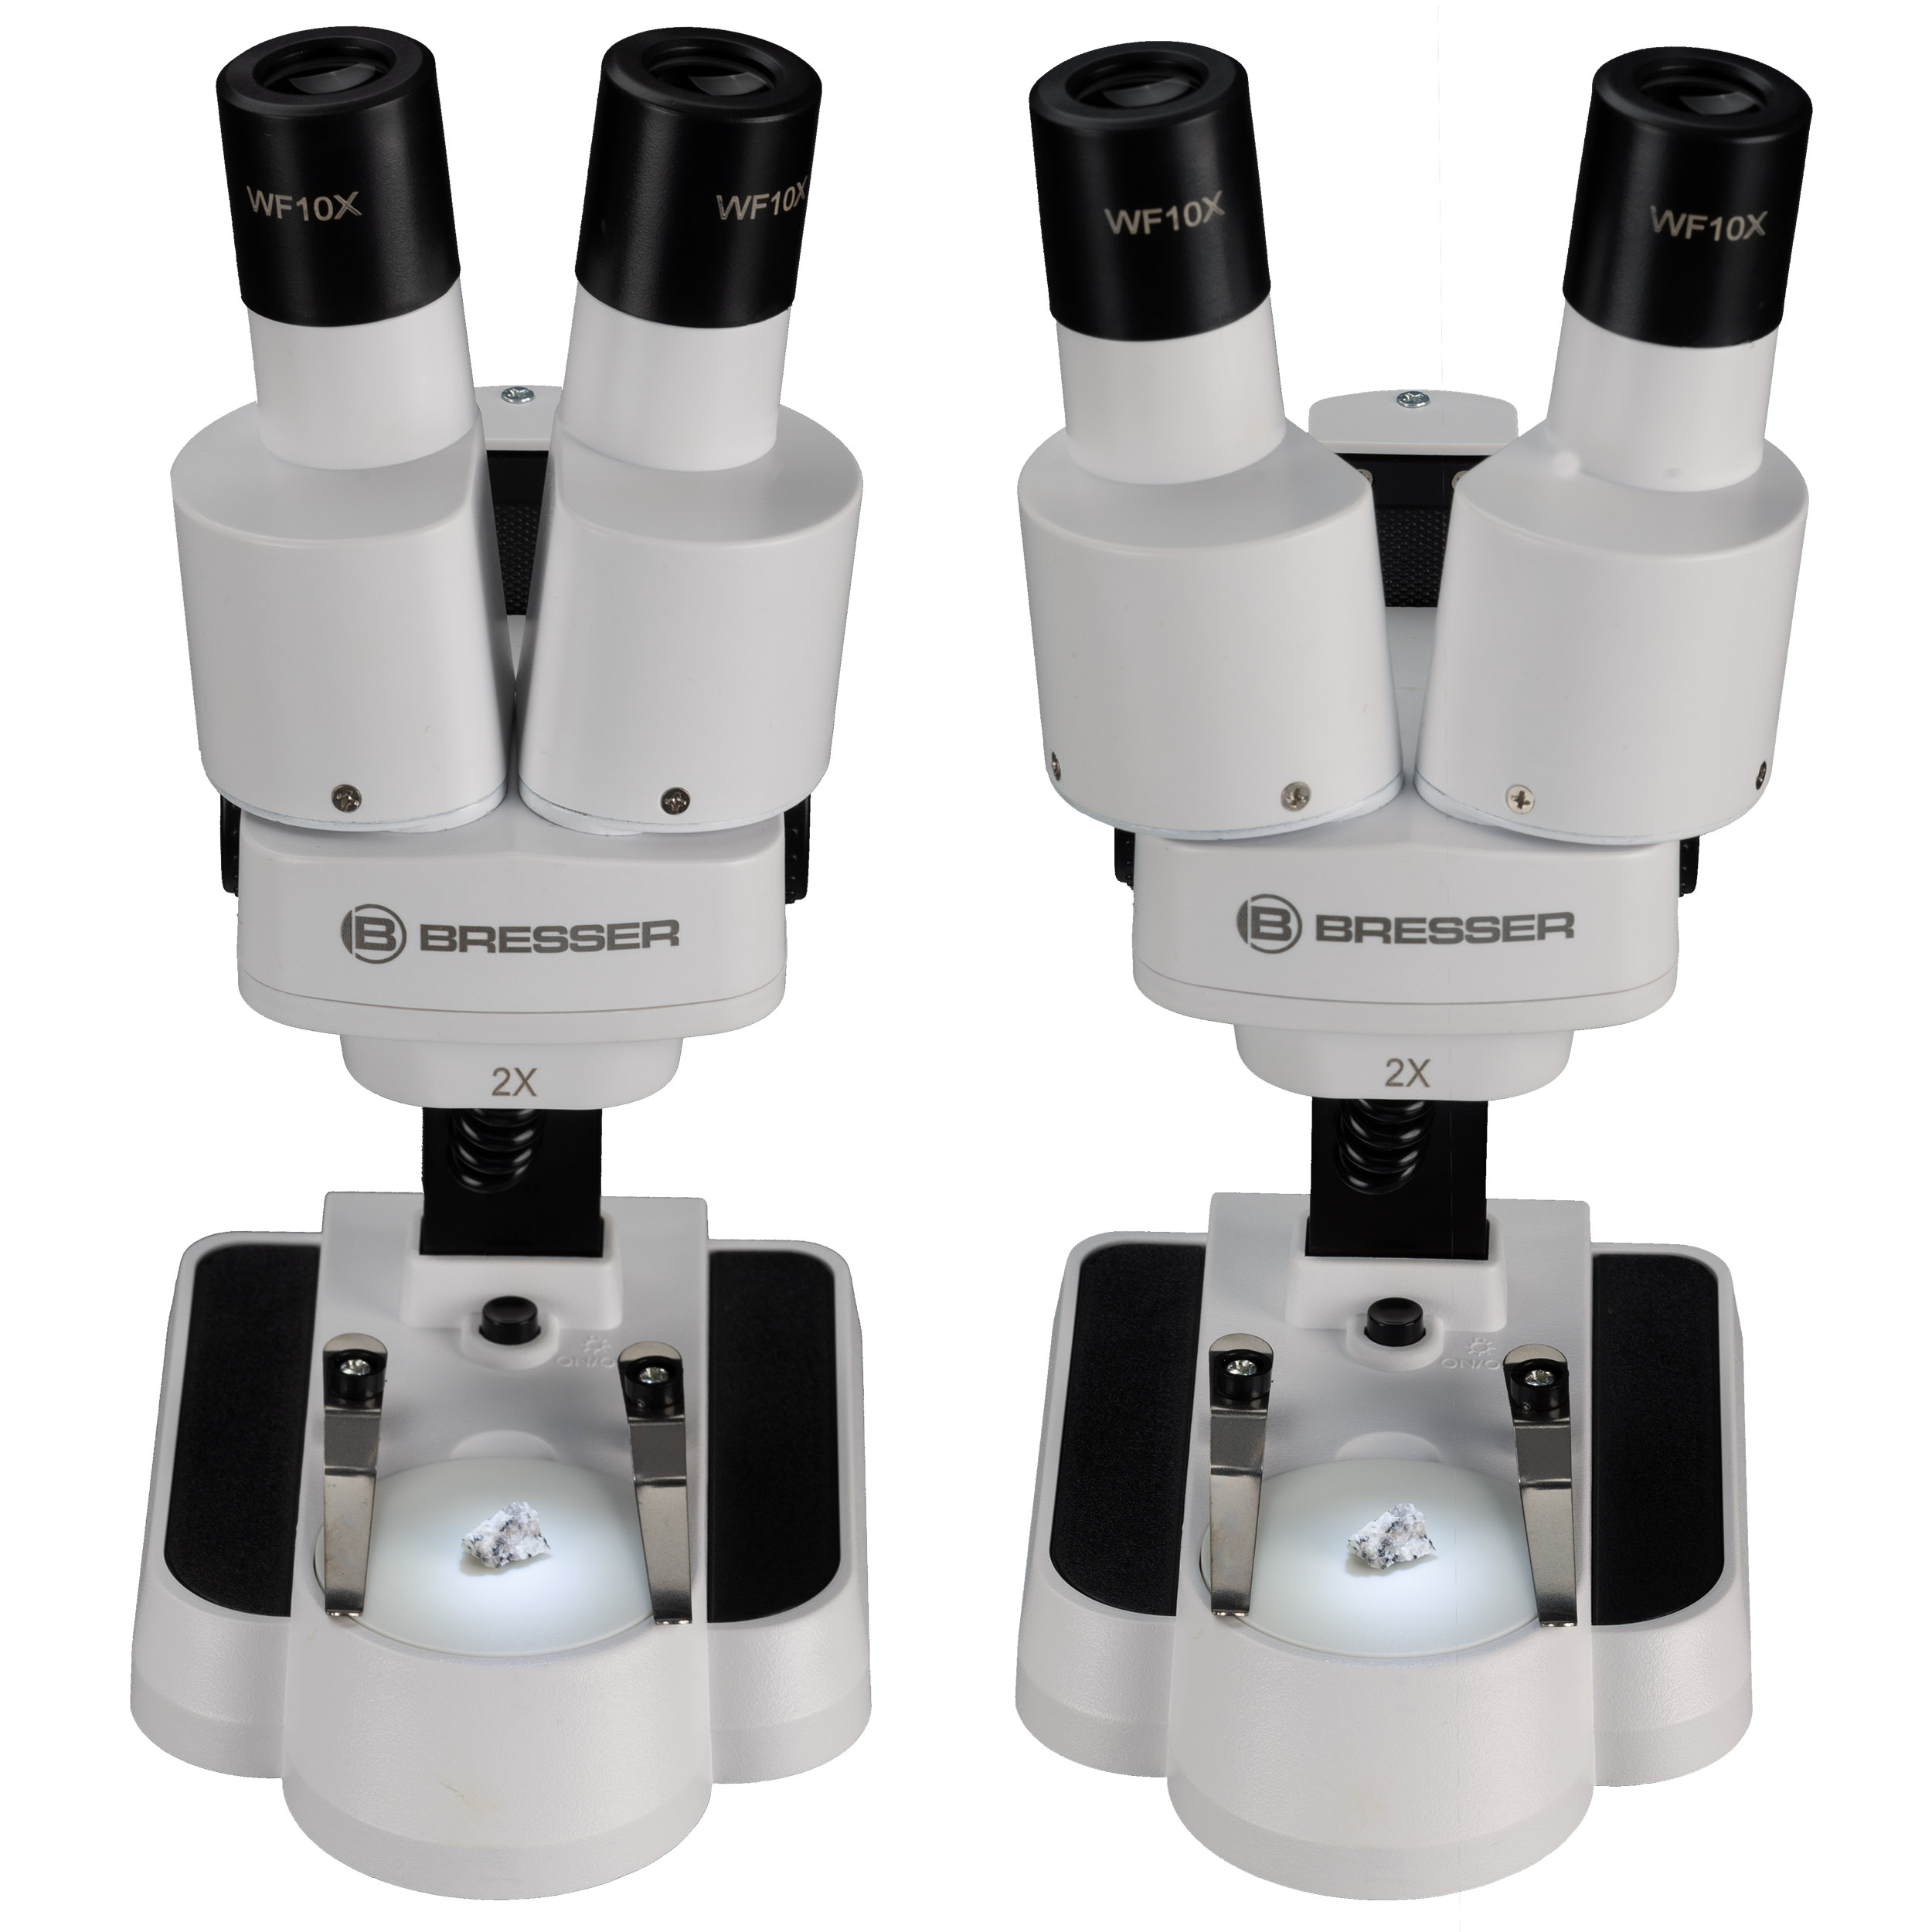 BRESSER JUNIOR 20x Stereo Microscope